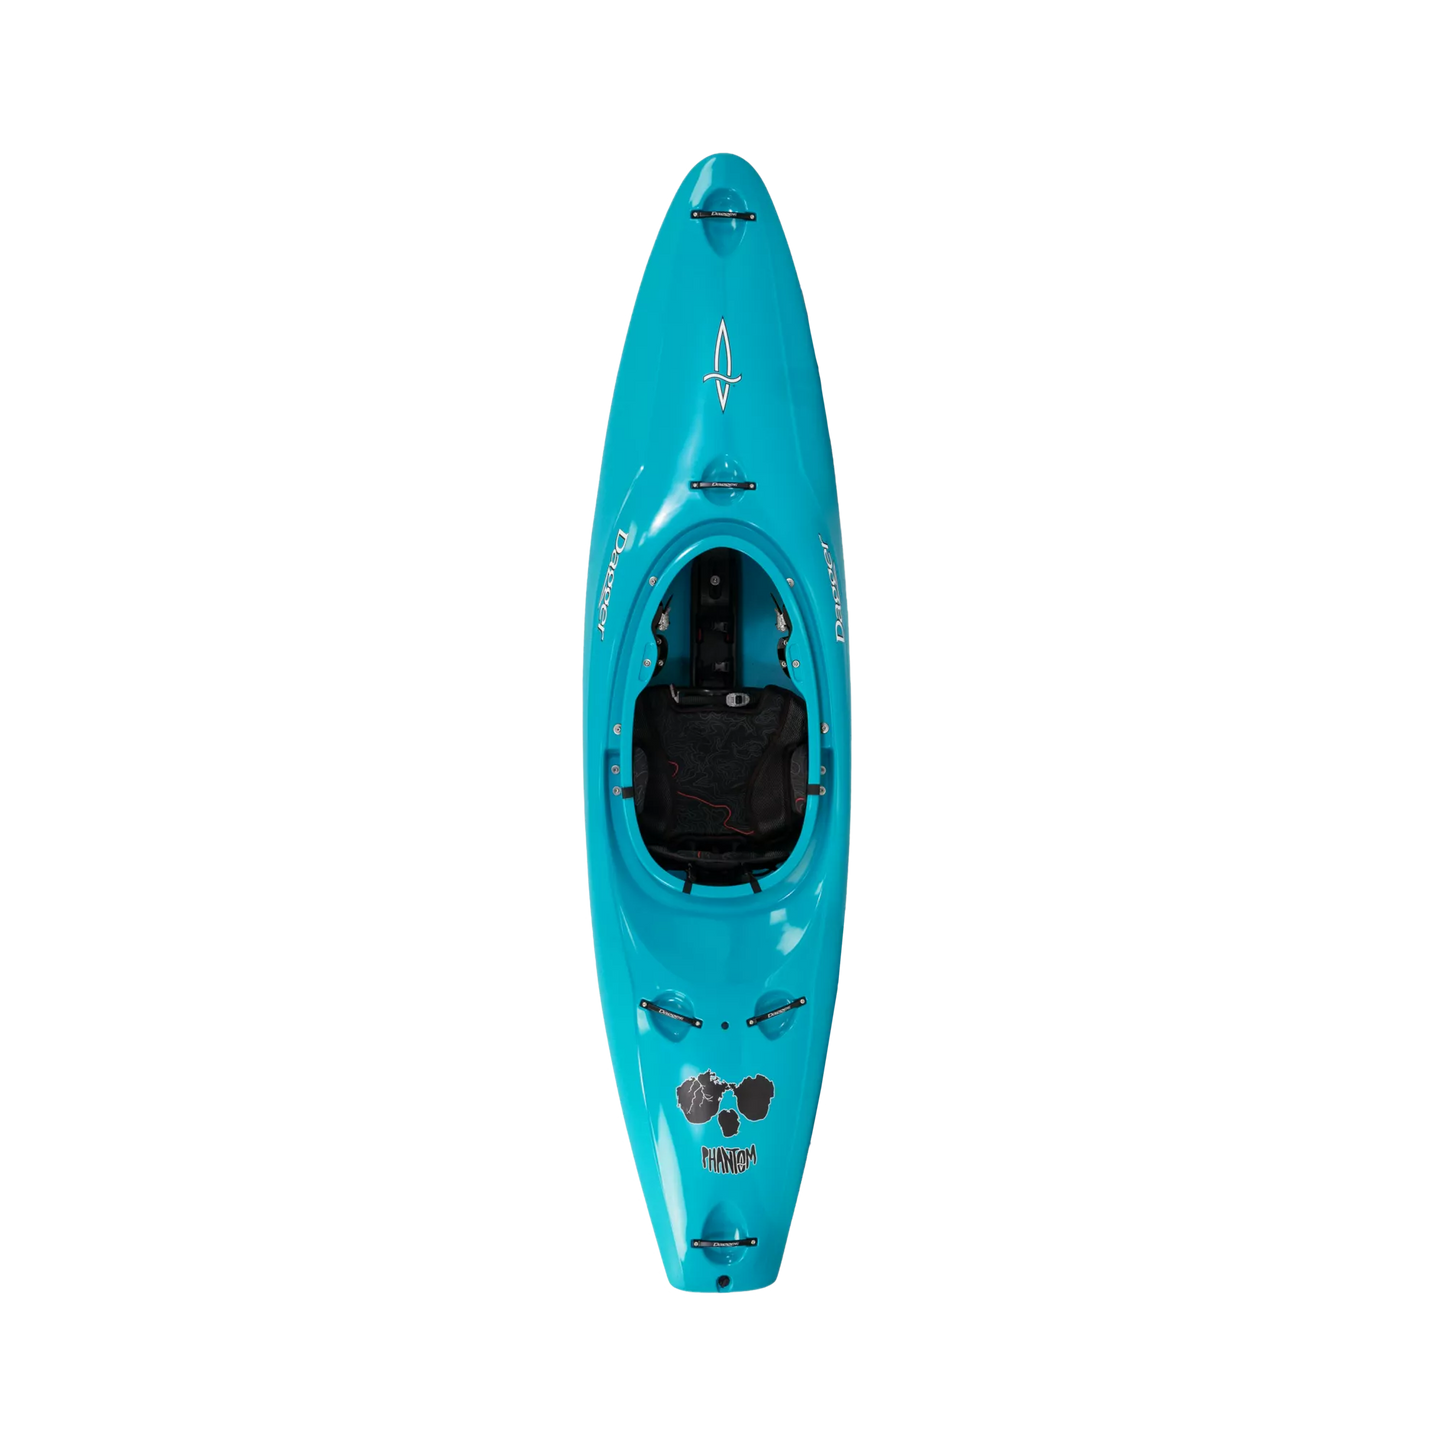 Turquoise Dagger Phantom creek/whitewater race kayak.